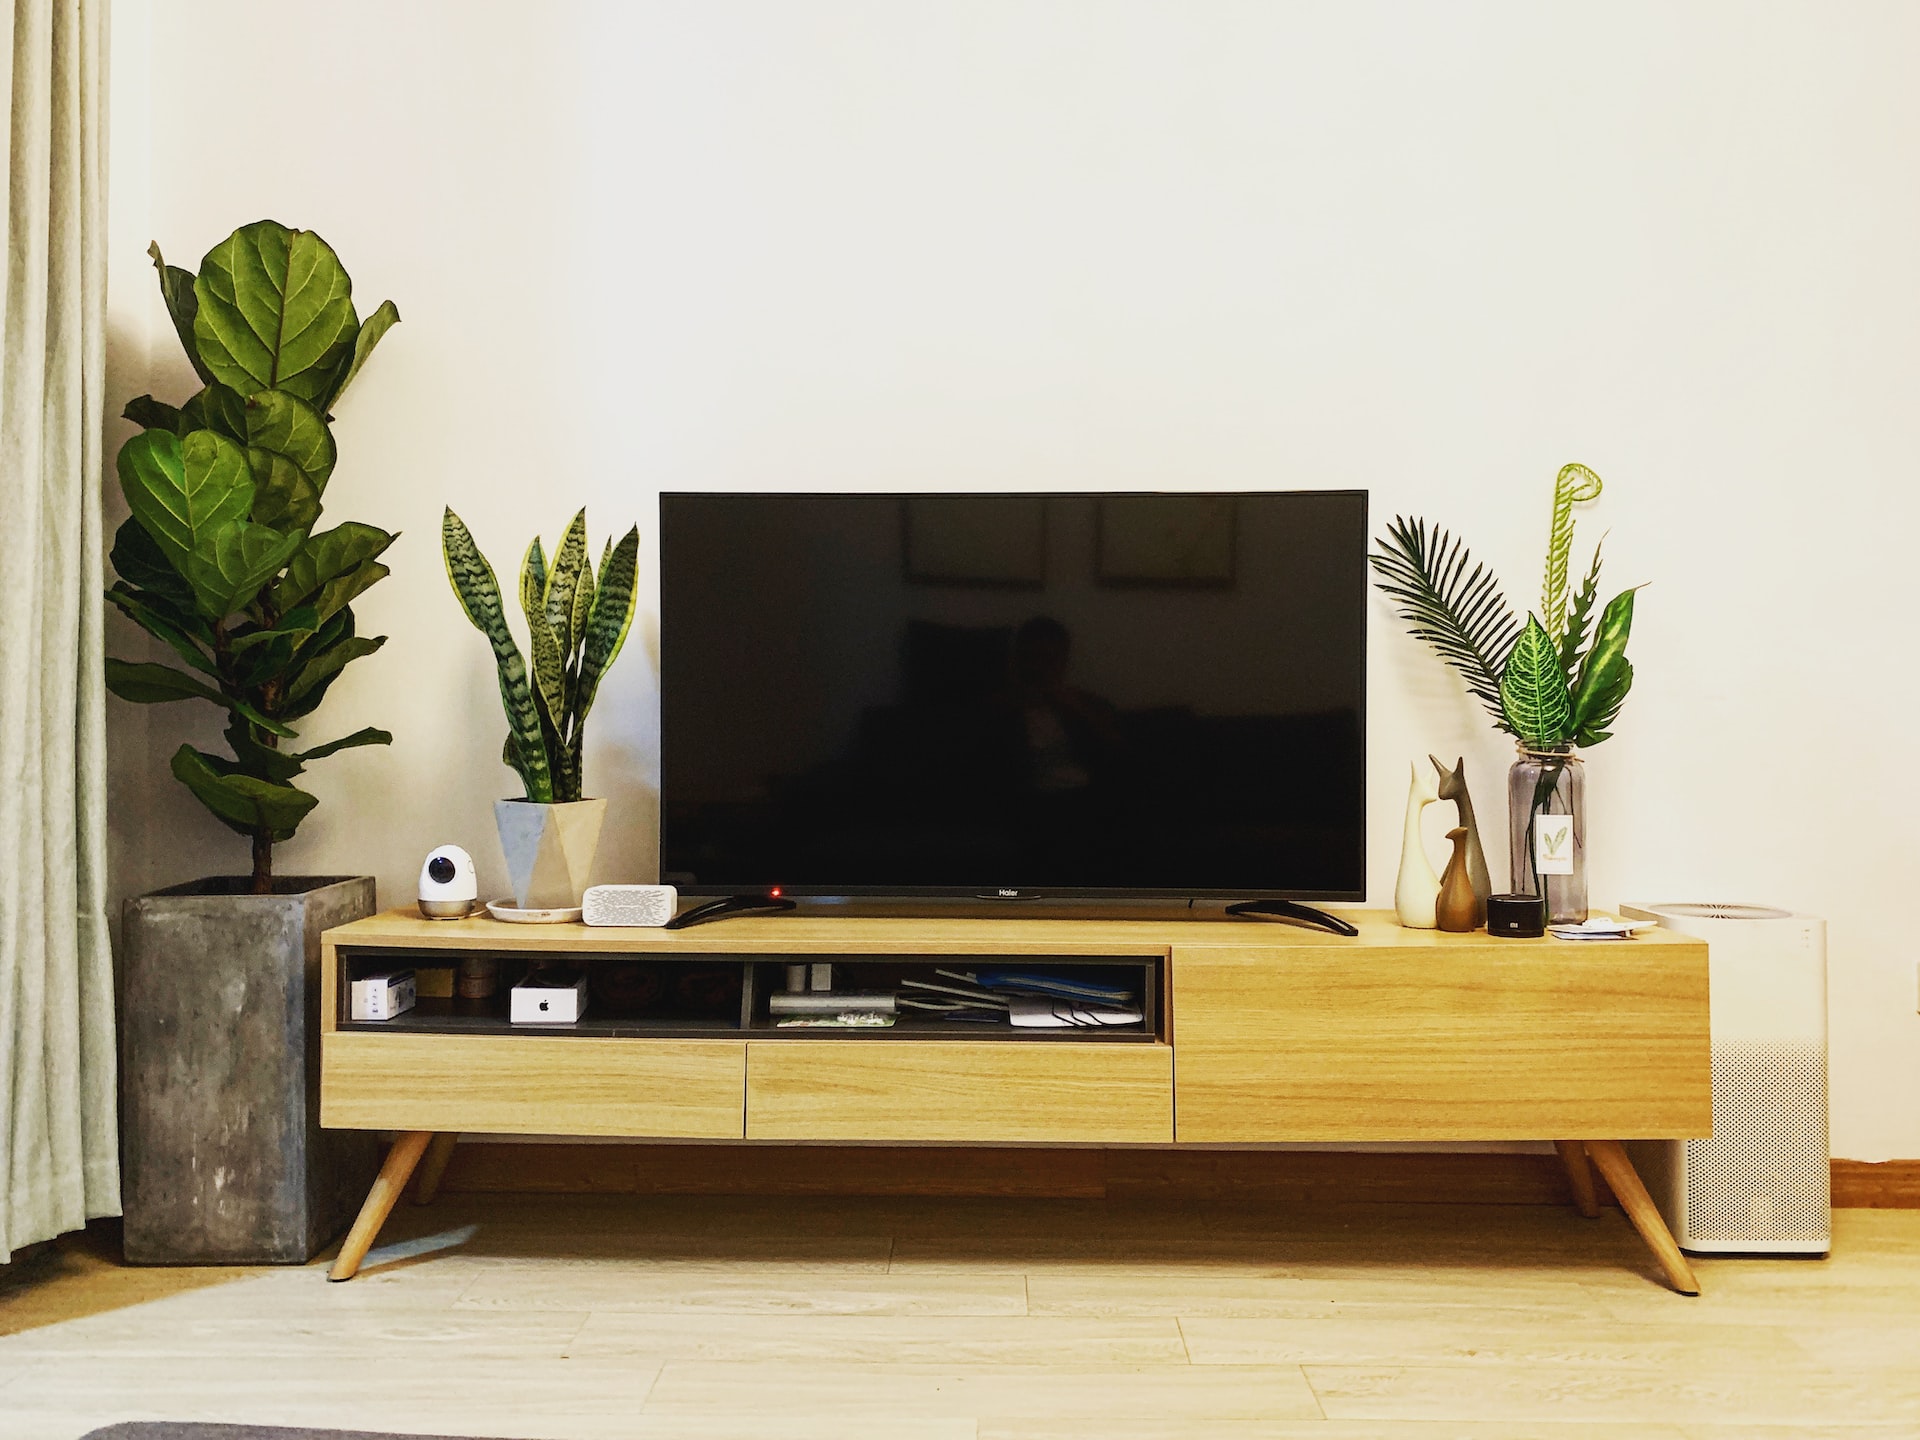 Rack, estante ou painel para TV; descubra aqui qual é a melhor opção para sua casa